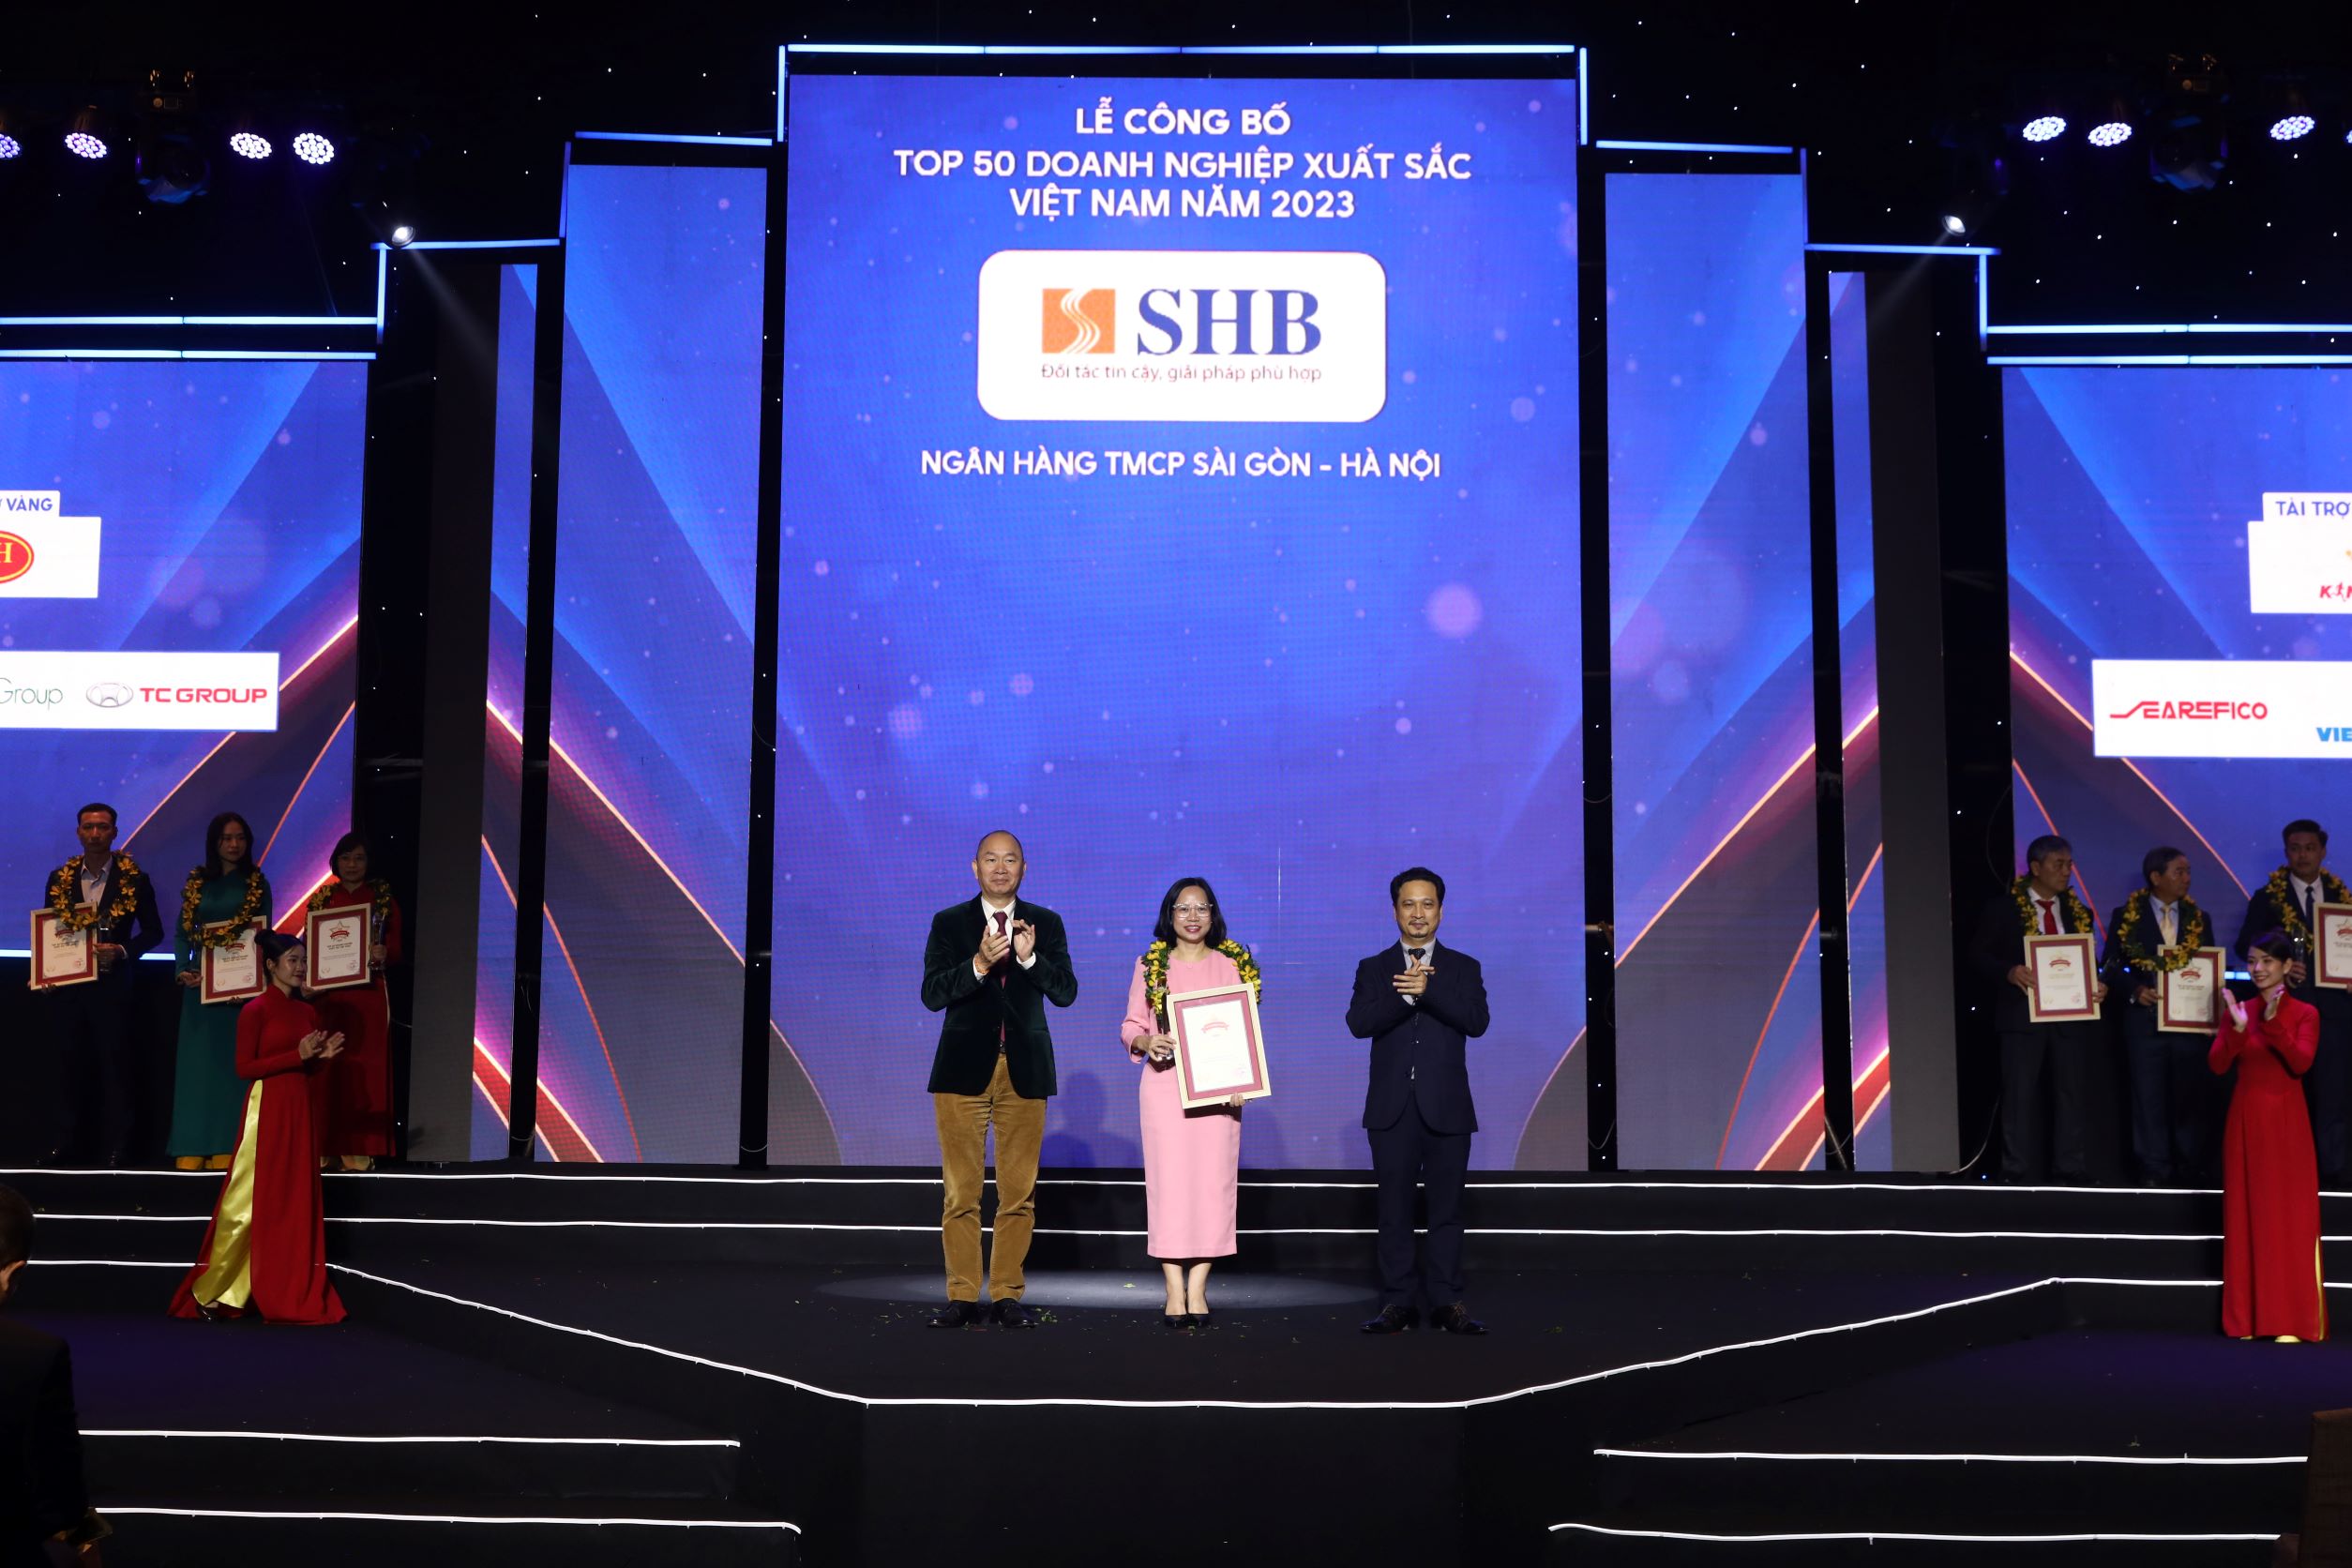 SHB 5 năm liên tiếp được vinh danh “Top 50 doanh nghiệp xuất sắc nhất Việt Nam”- Ảnh 1.